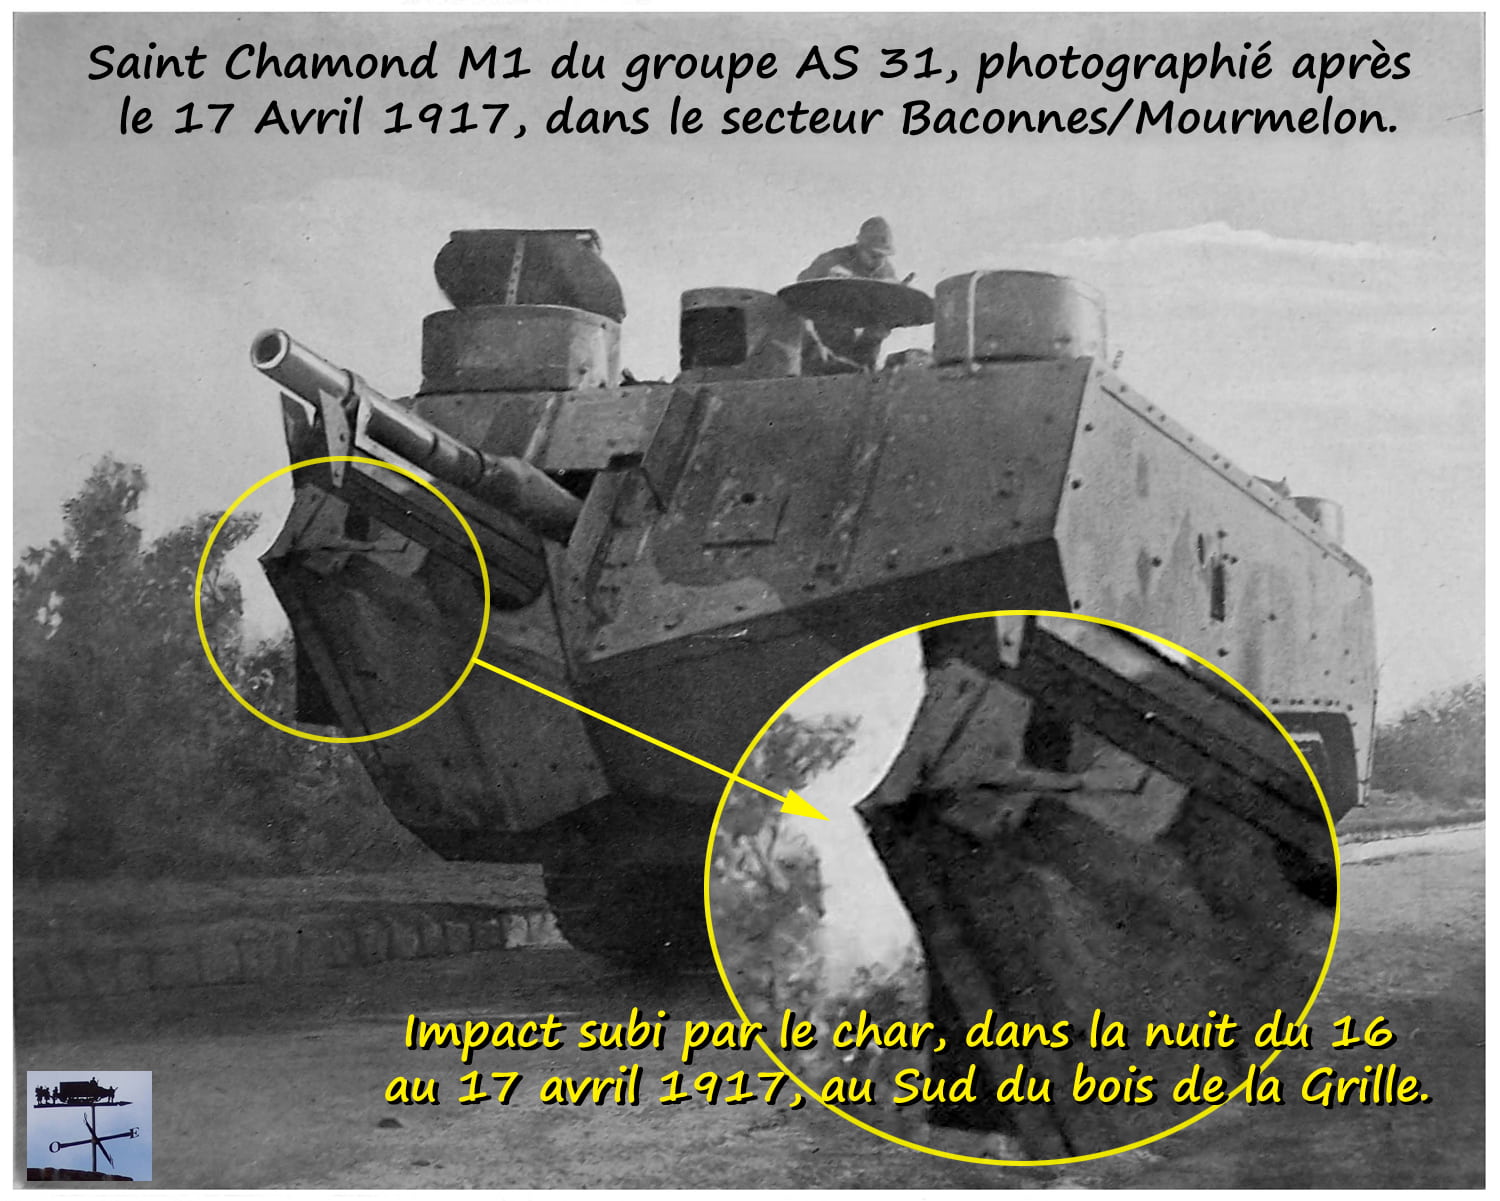 Grpt X - AS 31 - St Chamond M1-min.jpg